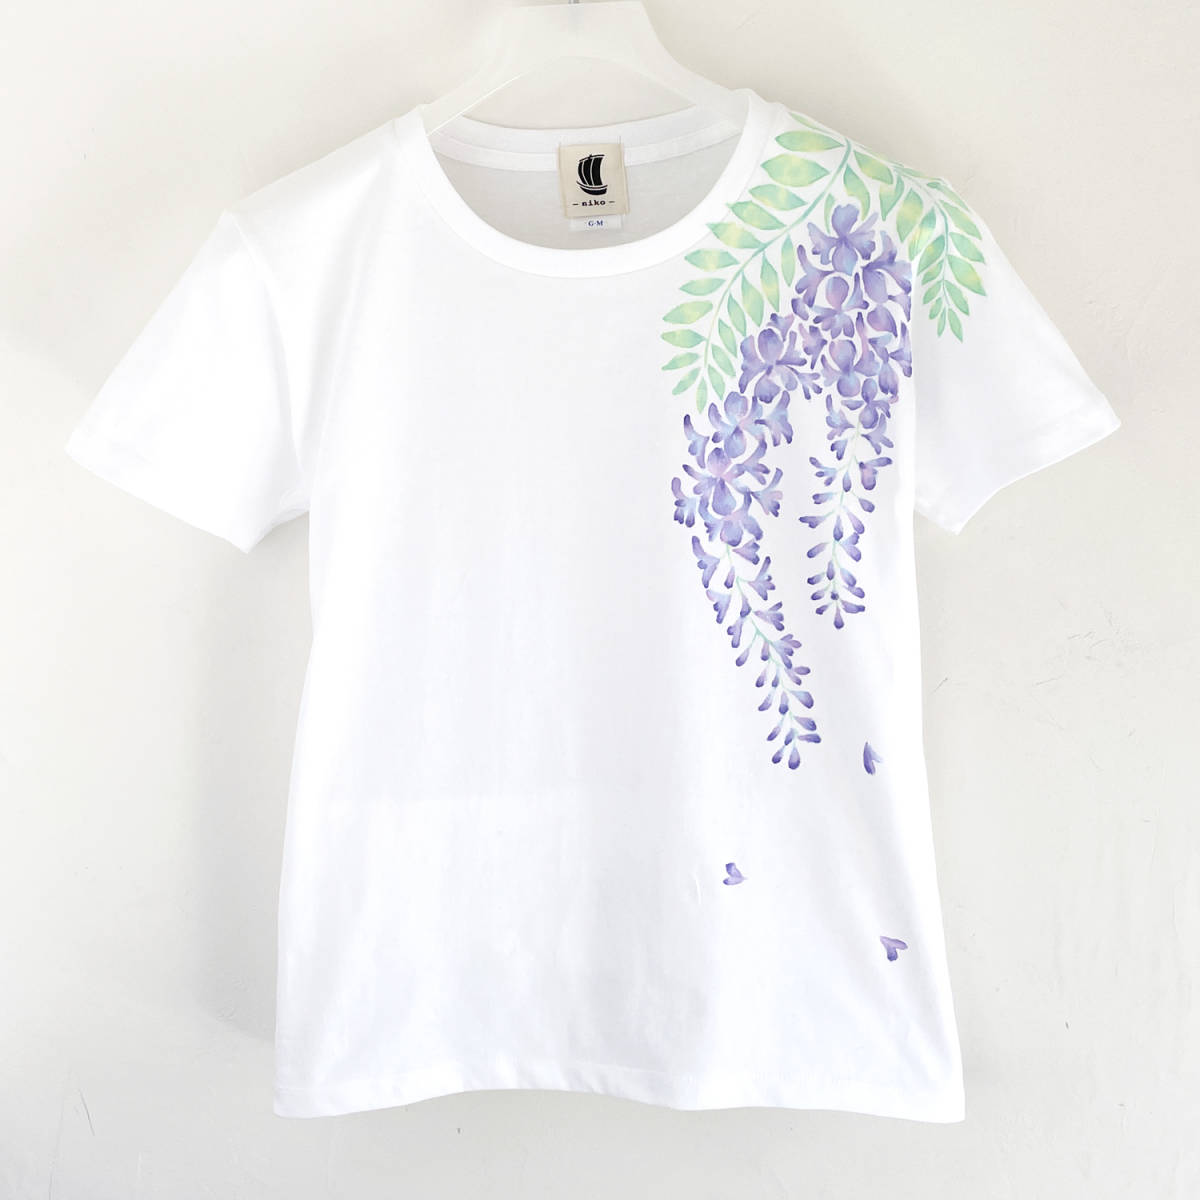 여성용 티셔츠, M 사이즈, 하얀색, 등나무 플라워 패턴 티셔츠, 수공, 핸드페인팅 티셔츠, 중간 사이즈, 크루 넥, 무늬가 있는